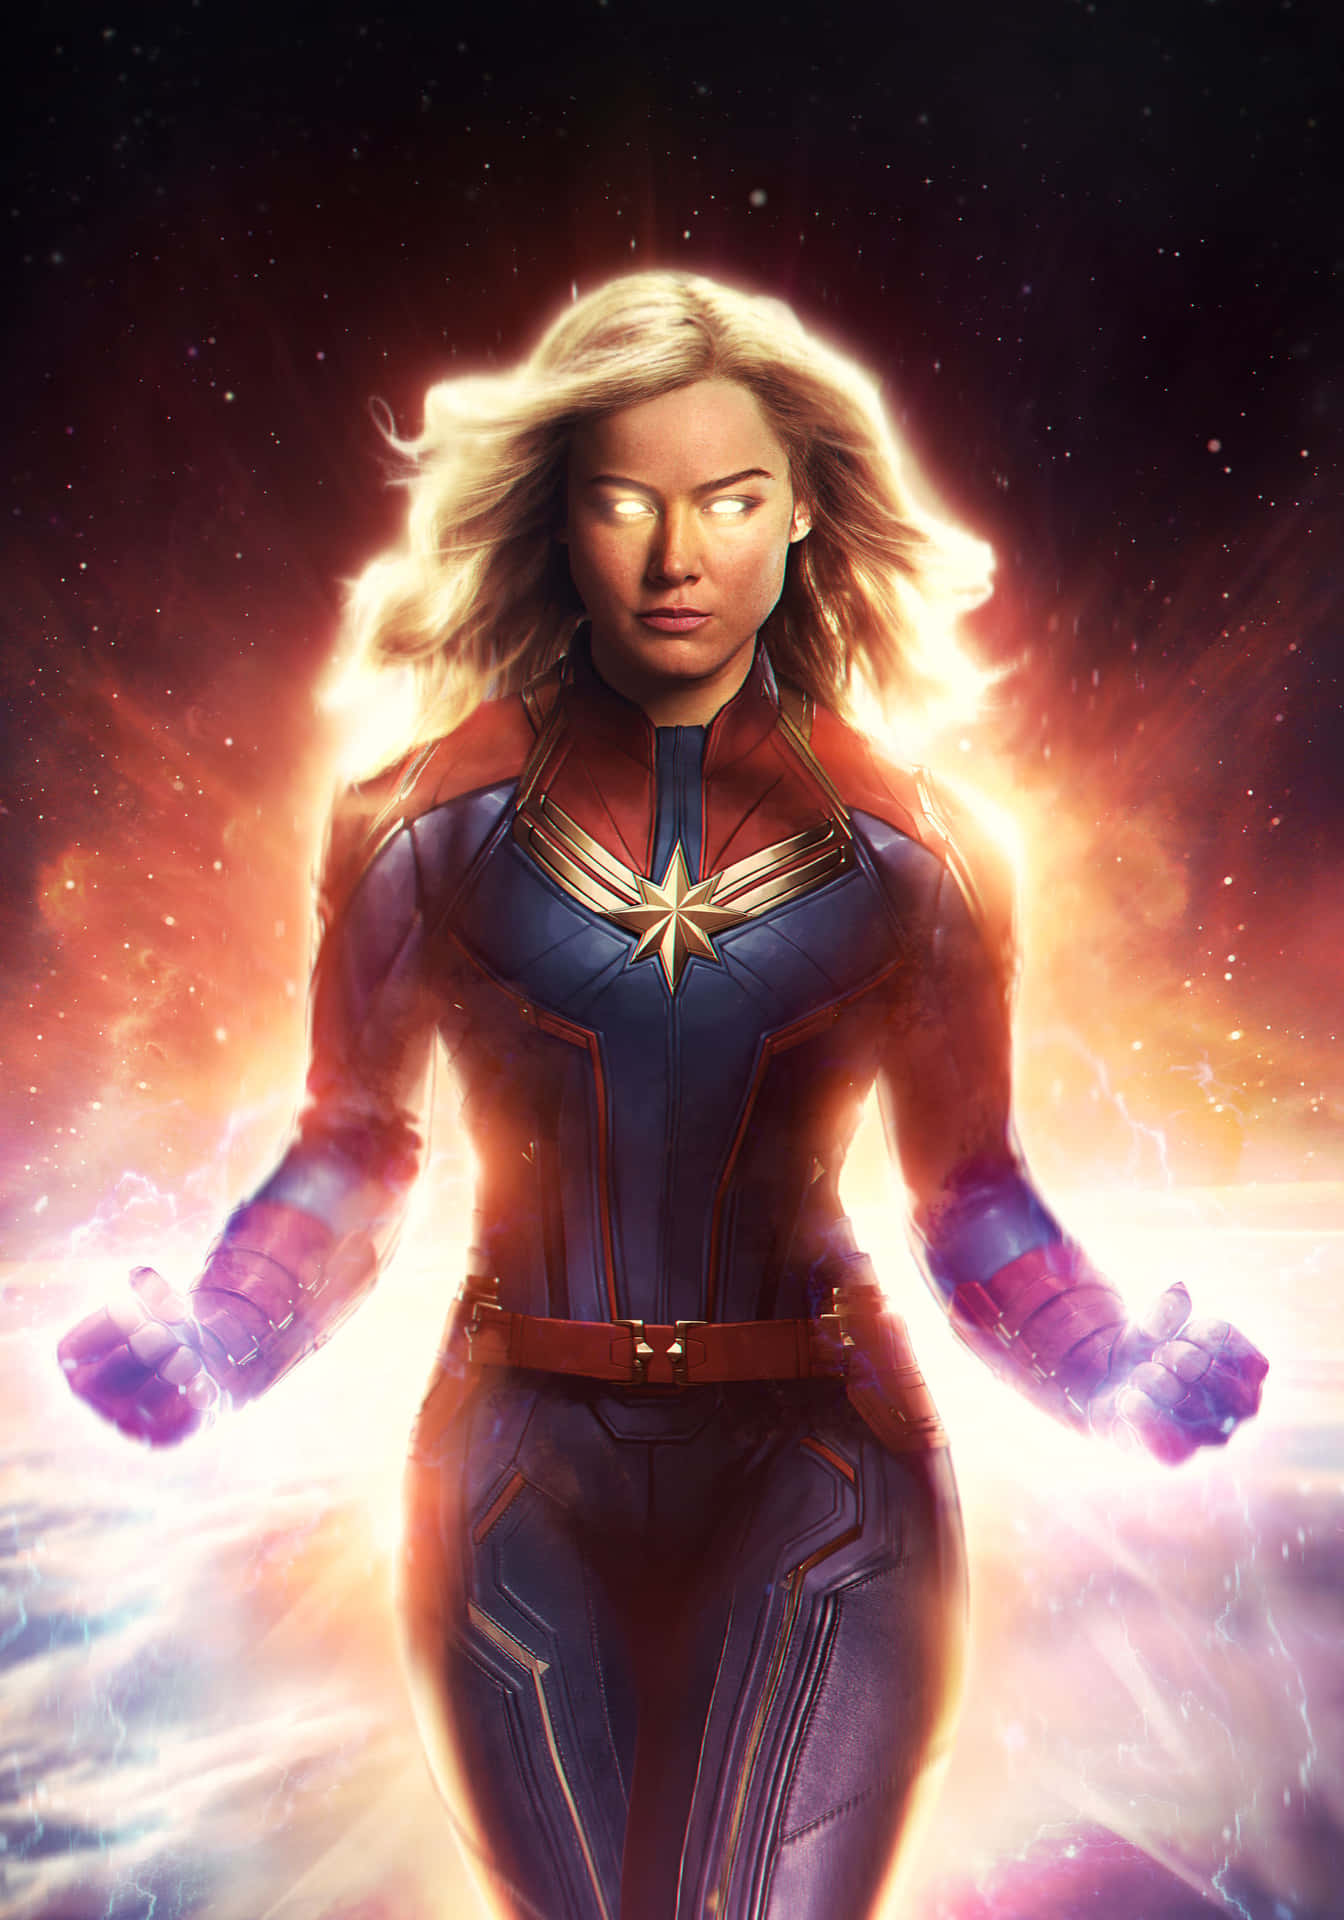 Brie Larson as Captain Marvel in Avengers: Endgame 2 Wallpaper